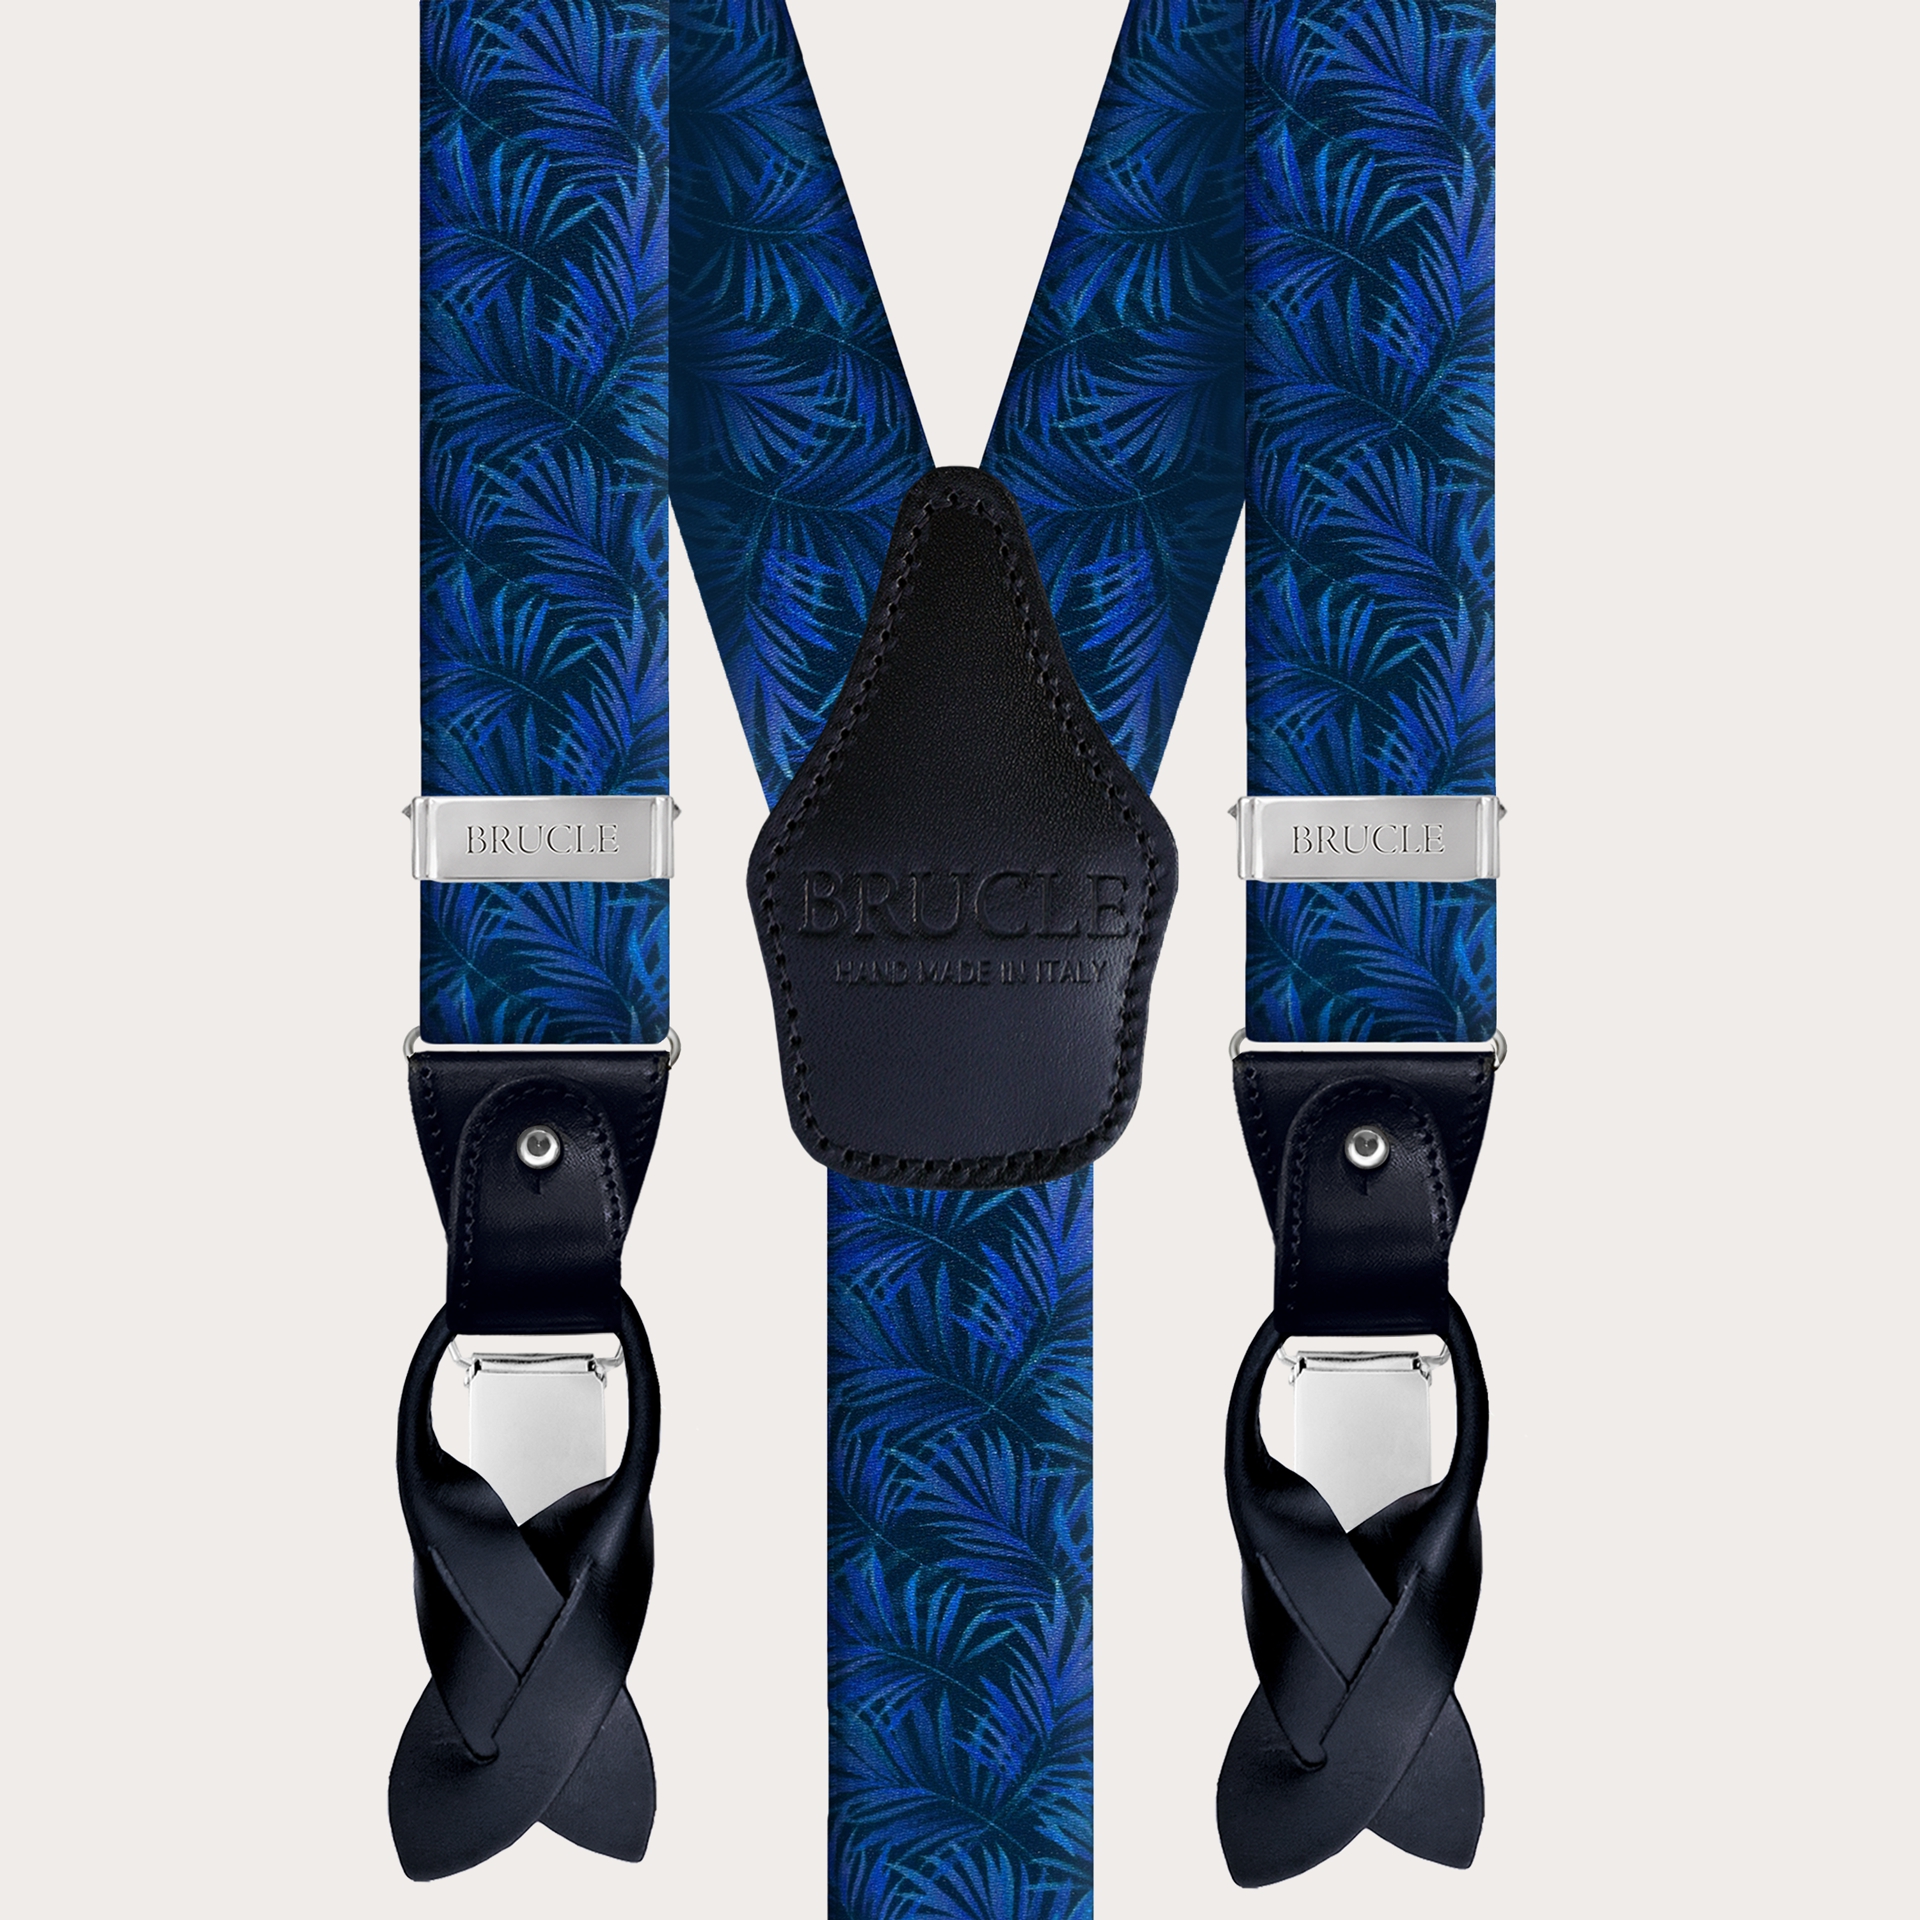 BRUCLE Elastische Hosenträger mit doppeltem Verwendungszweck in Satin-Optik, blau mit Palmblättern